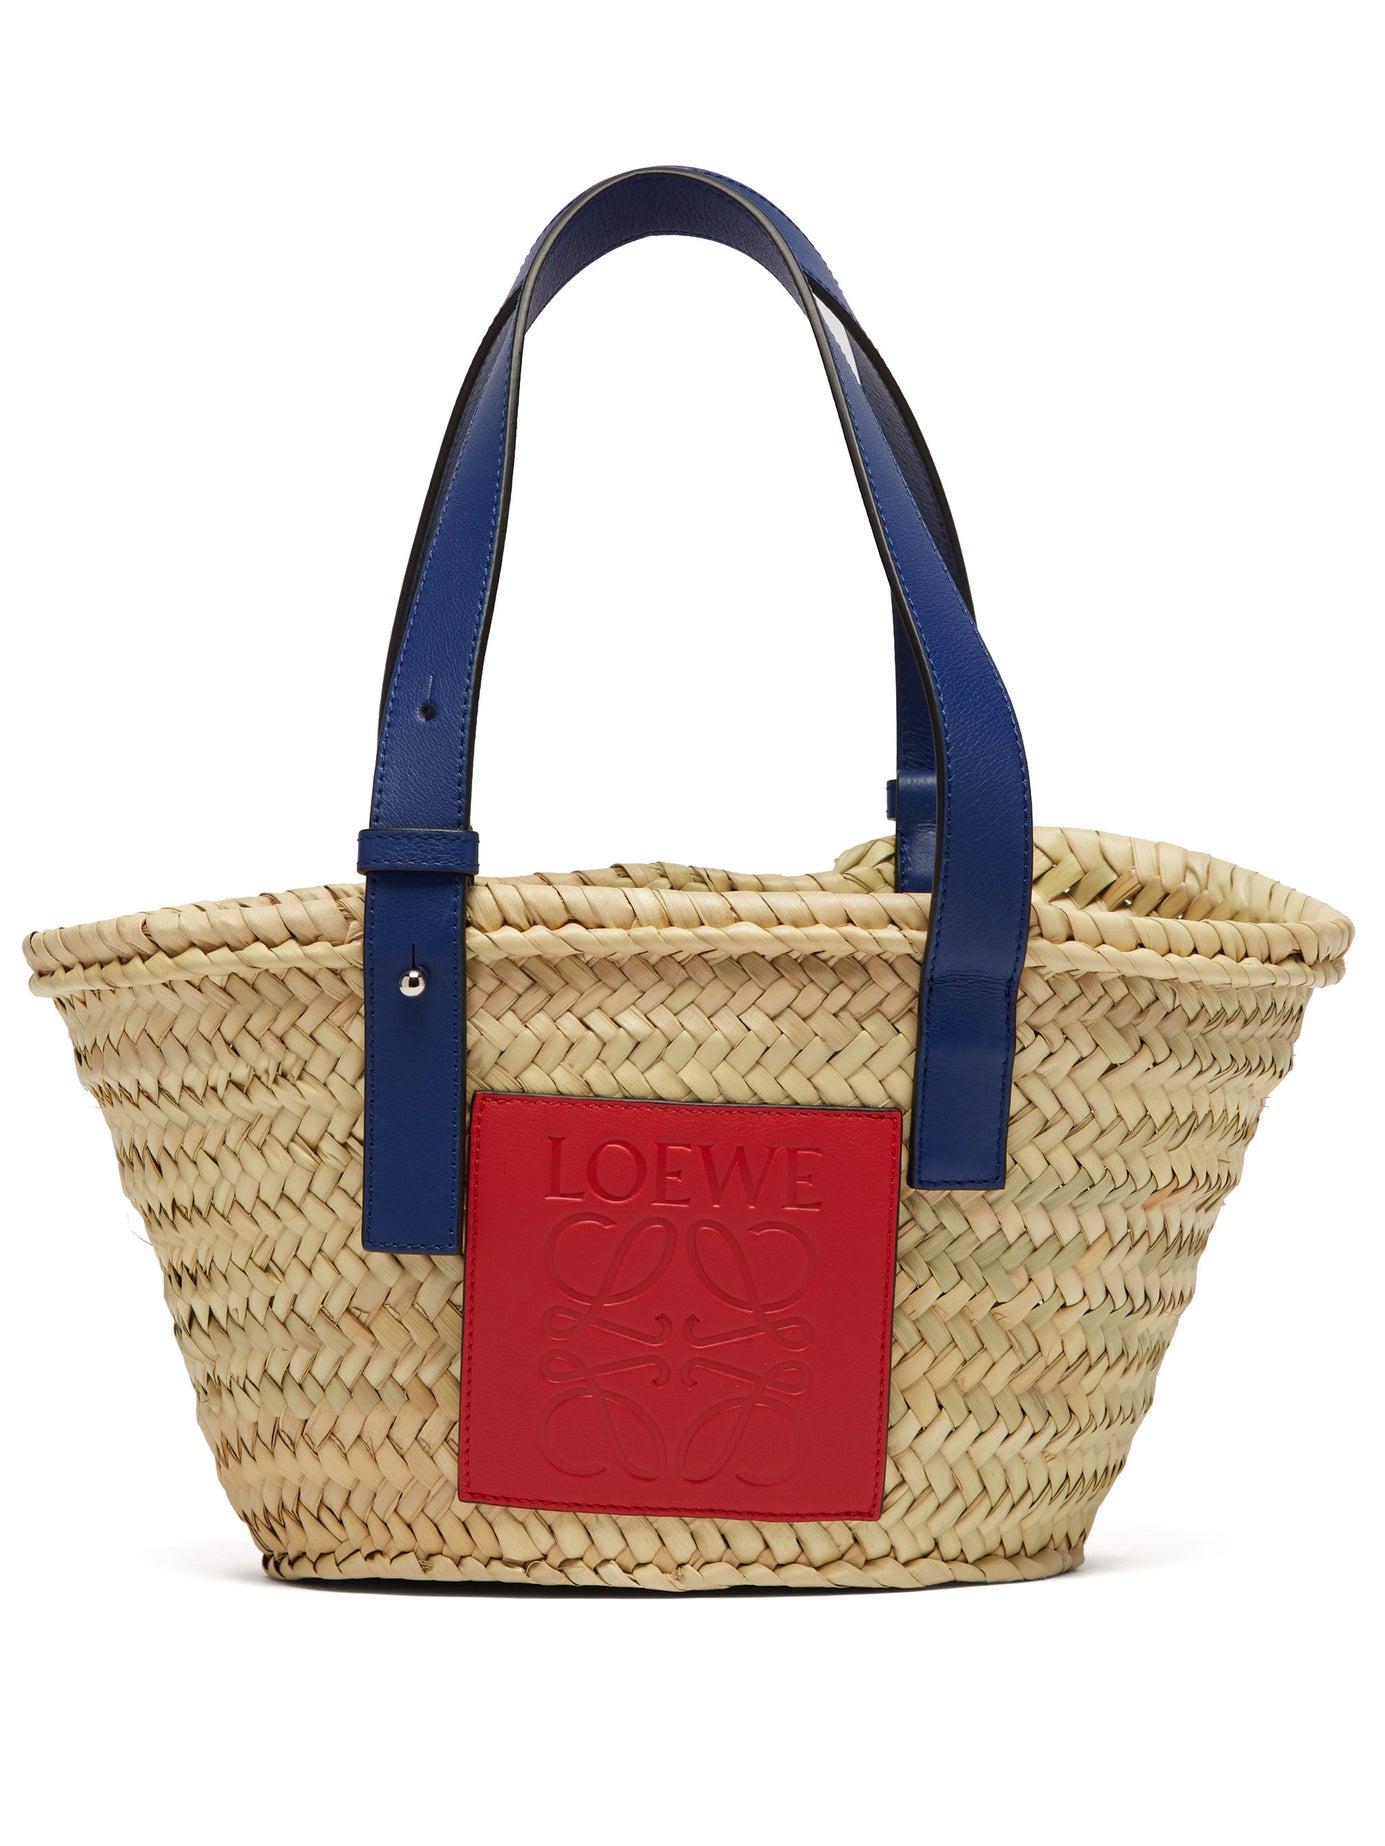 Buy Loewe Tote Bags On Sale - Square Basket bag in degrade raffia